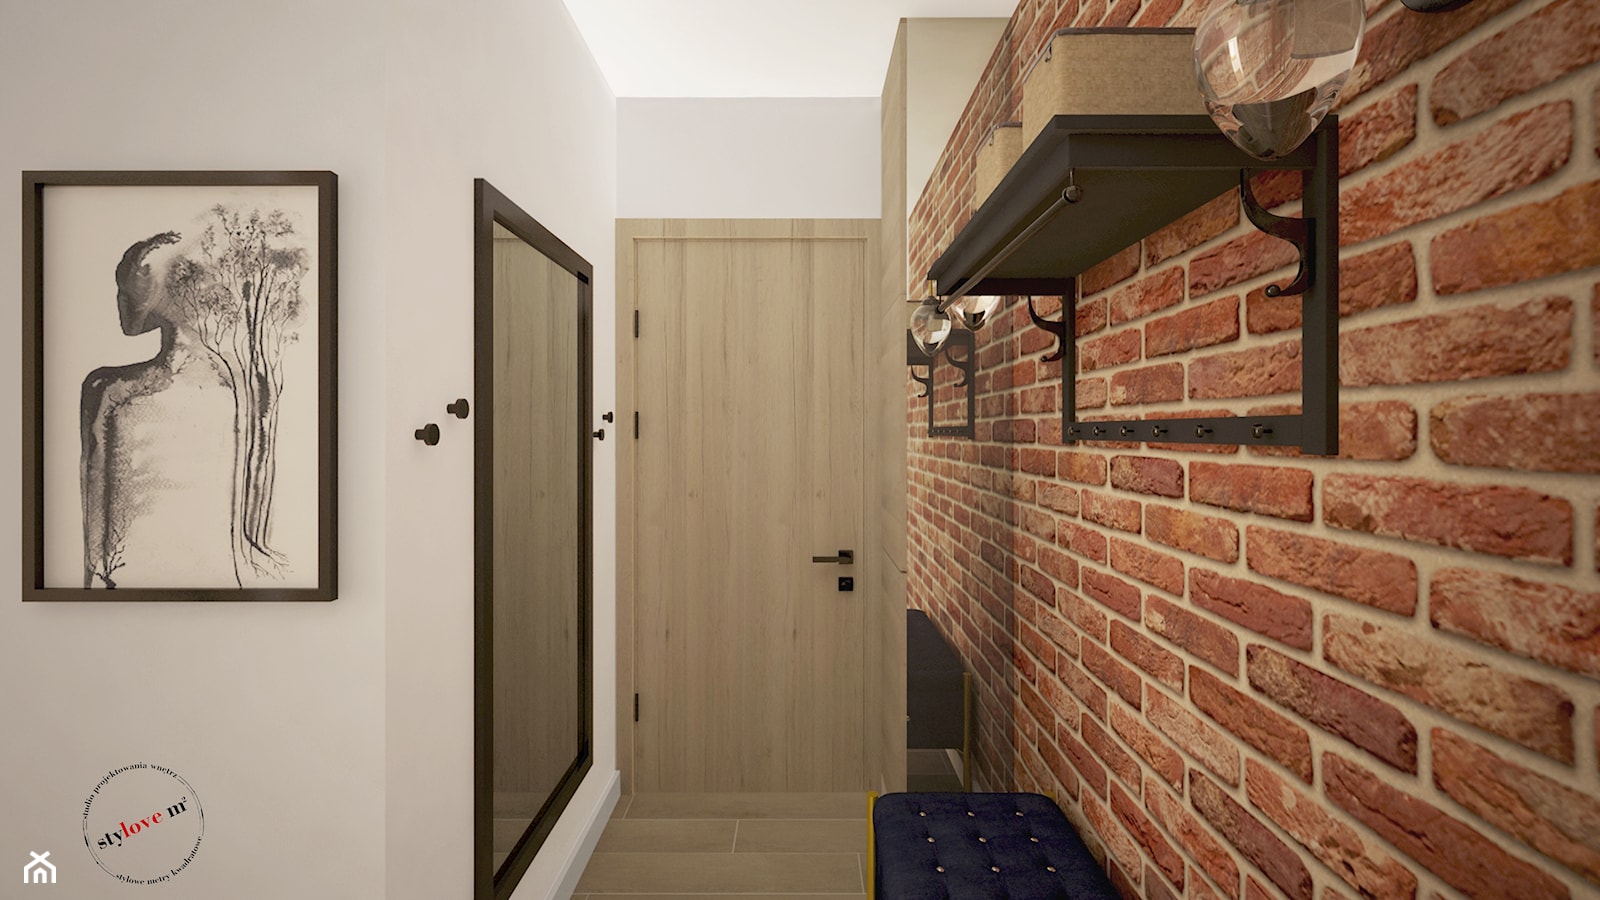 Mieszkanie z cegłą - Hol / przedpokój, styl industrialny - zdjęcie od STYLOVE M2 - Homebook